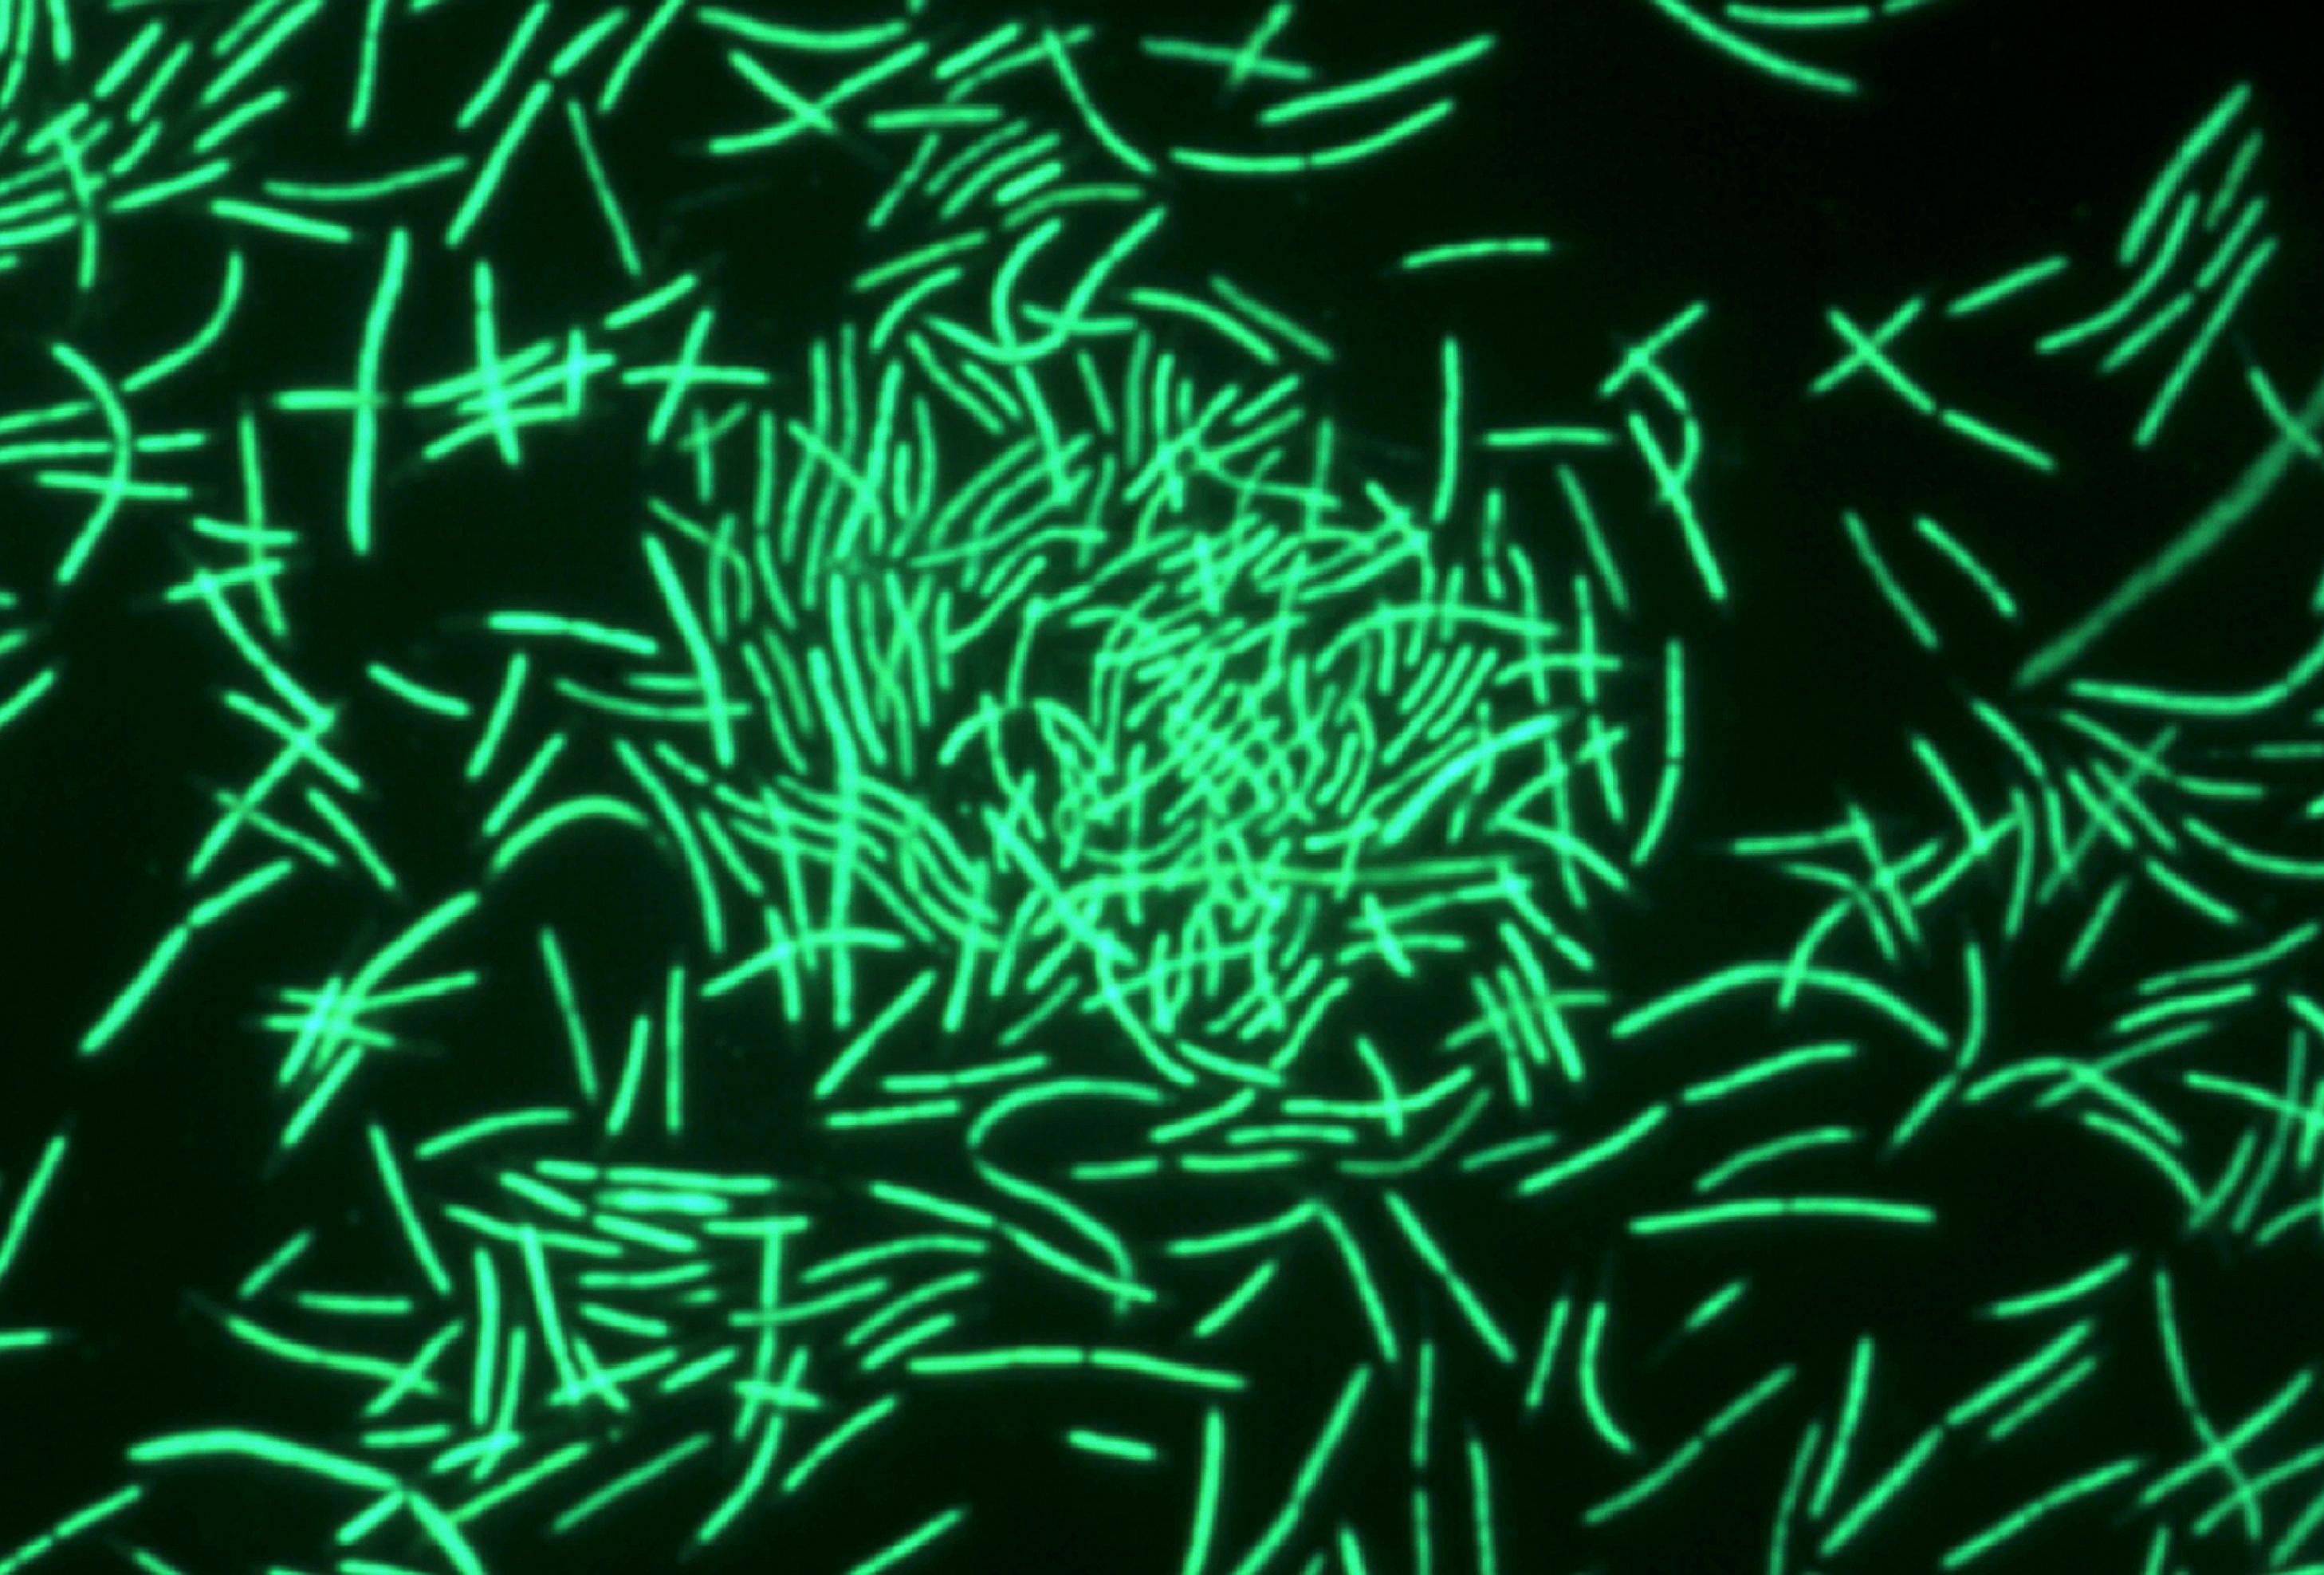 Bakterien in Stäbchenform leuchten in hellgrün.